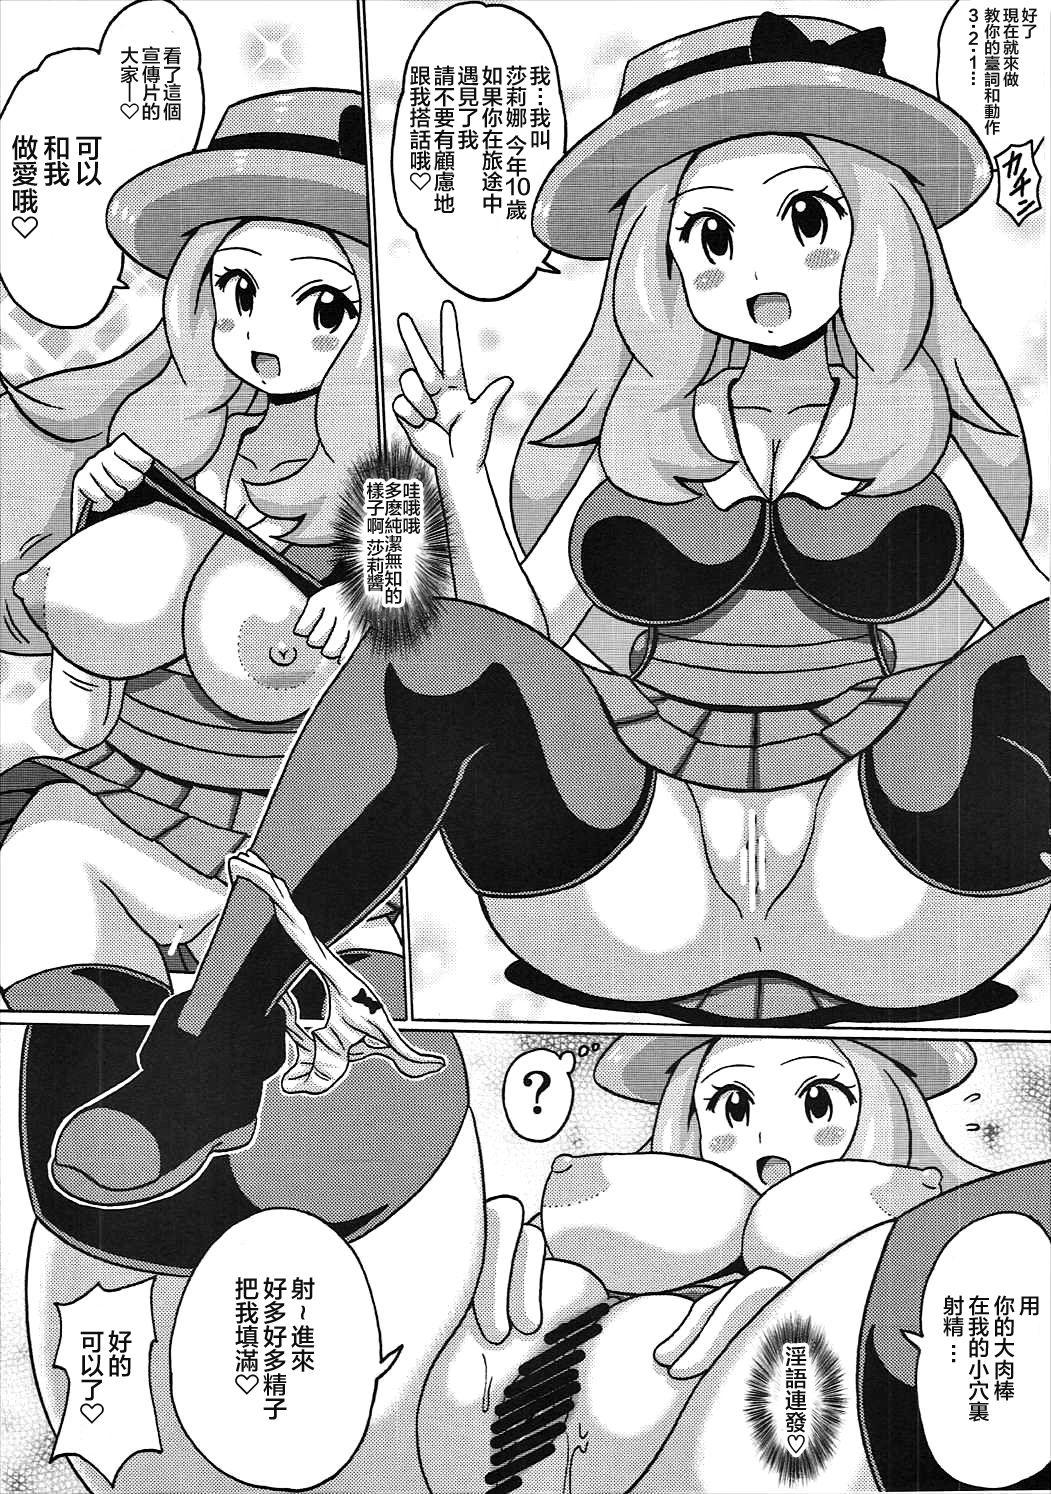 Nut Serena no TraPro - Pokemon Trap - Page 6